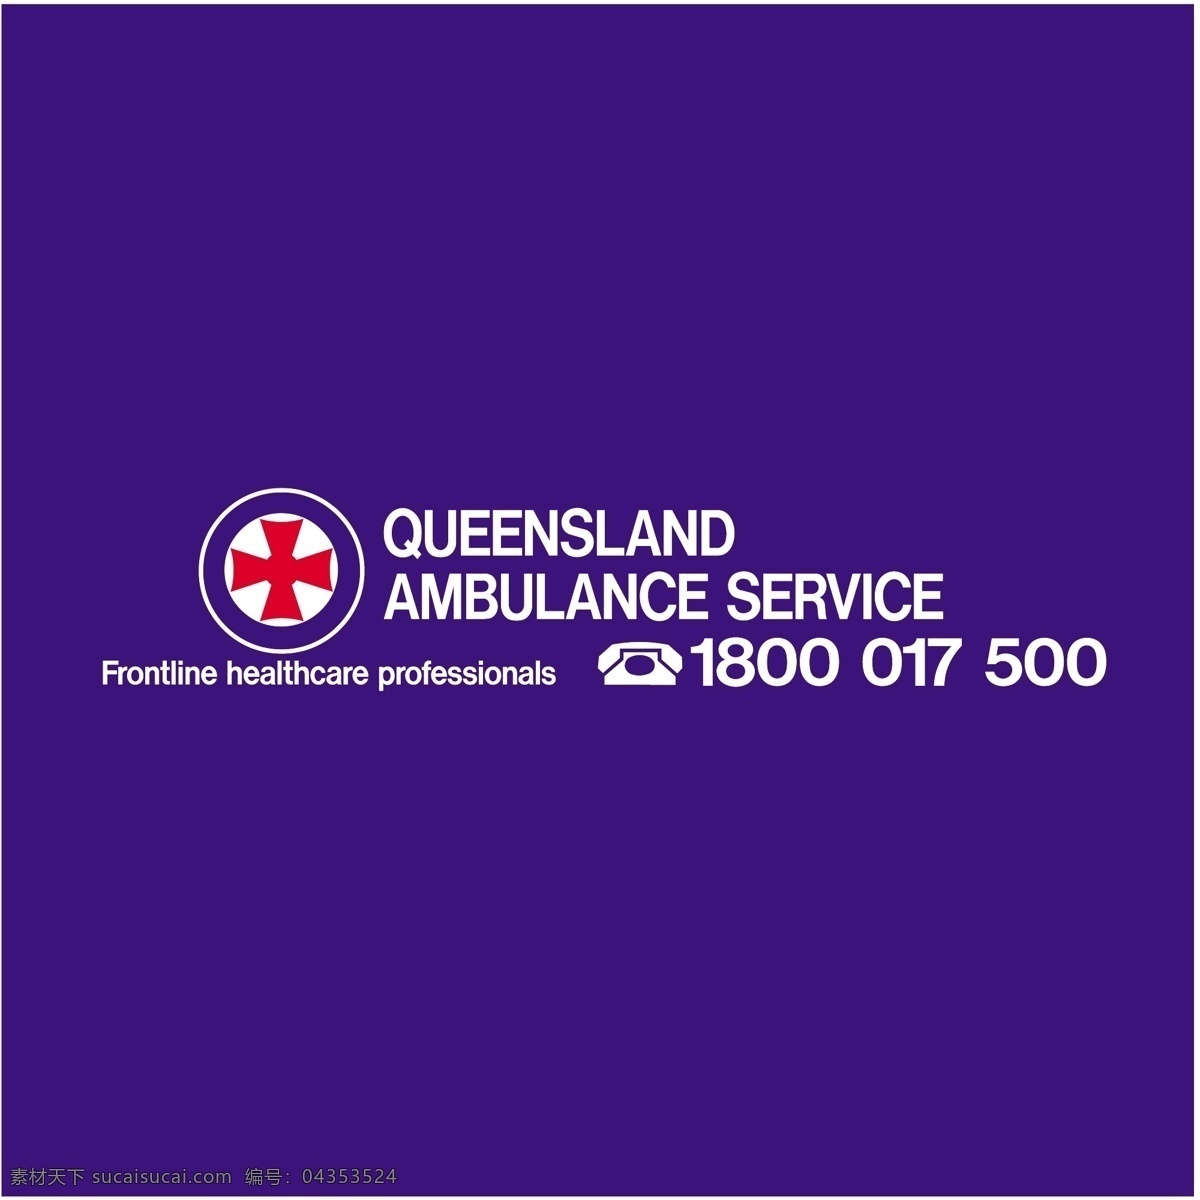 自由 昆士兰 救护车 服务 标志 免费 紫色